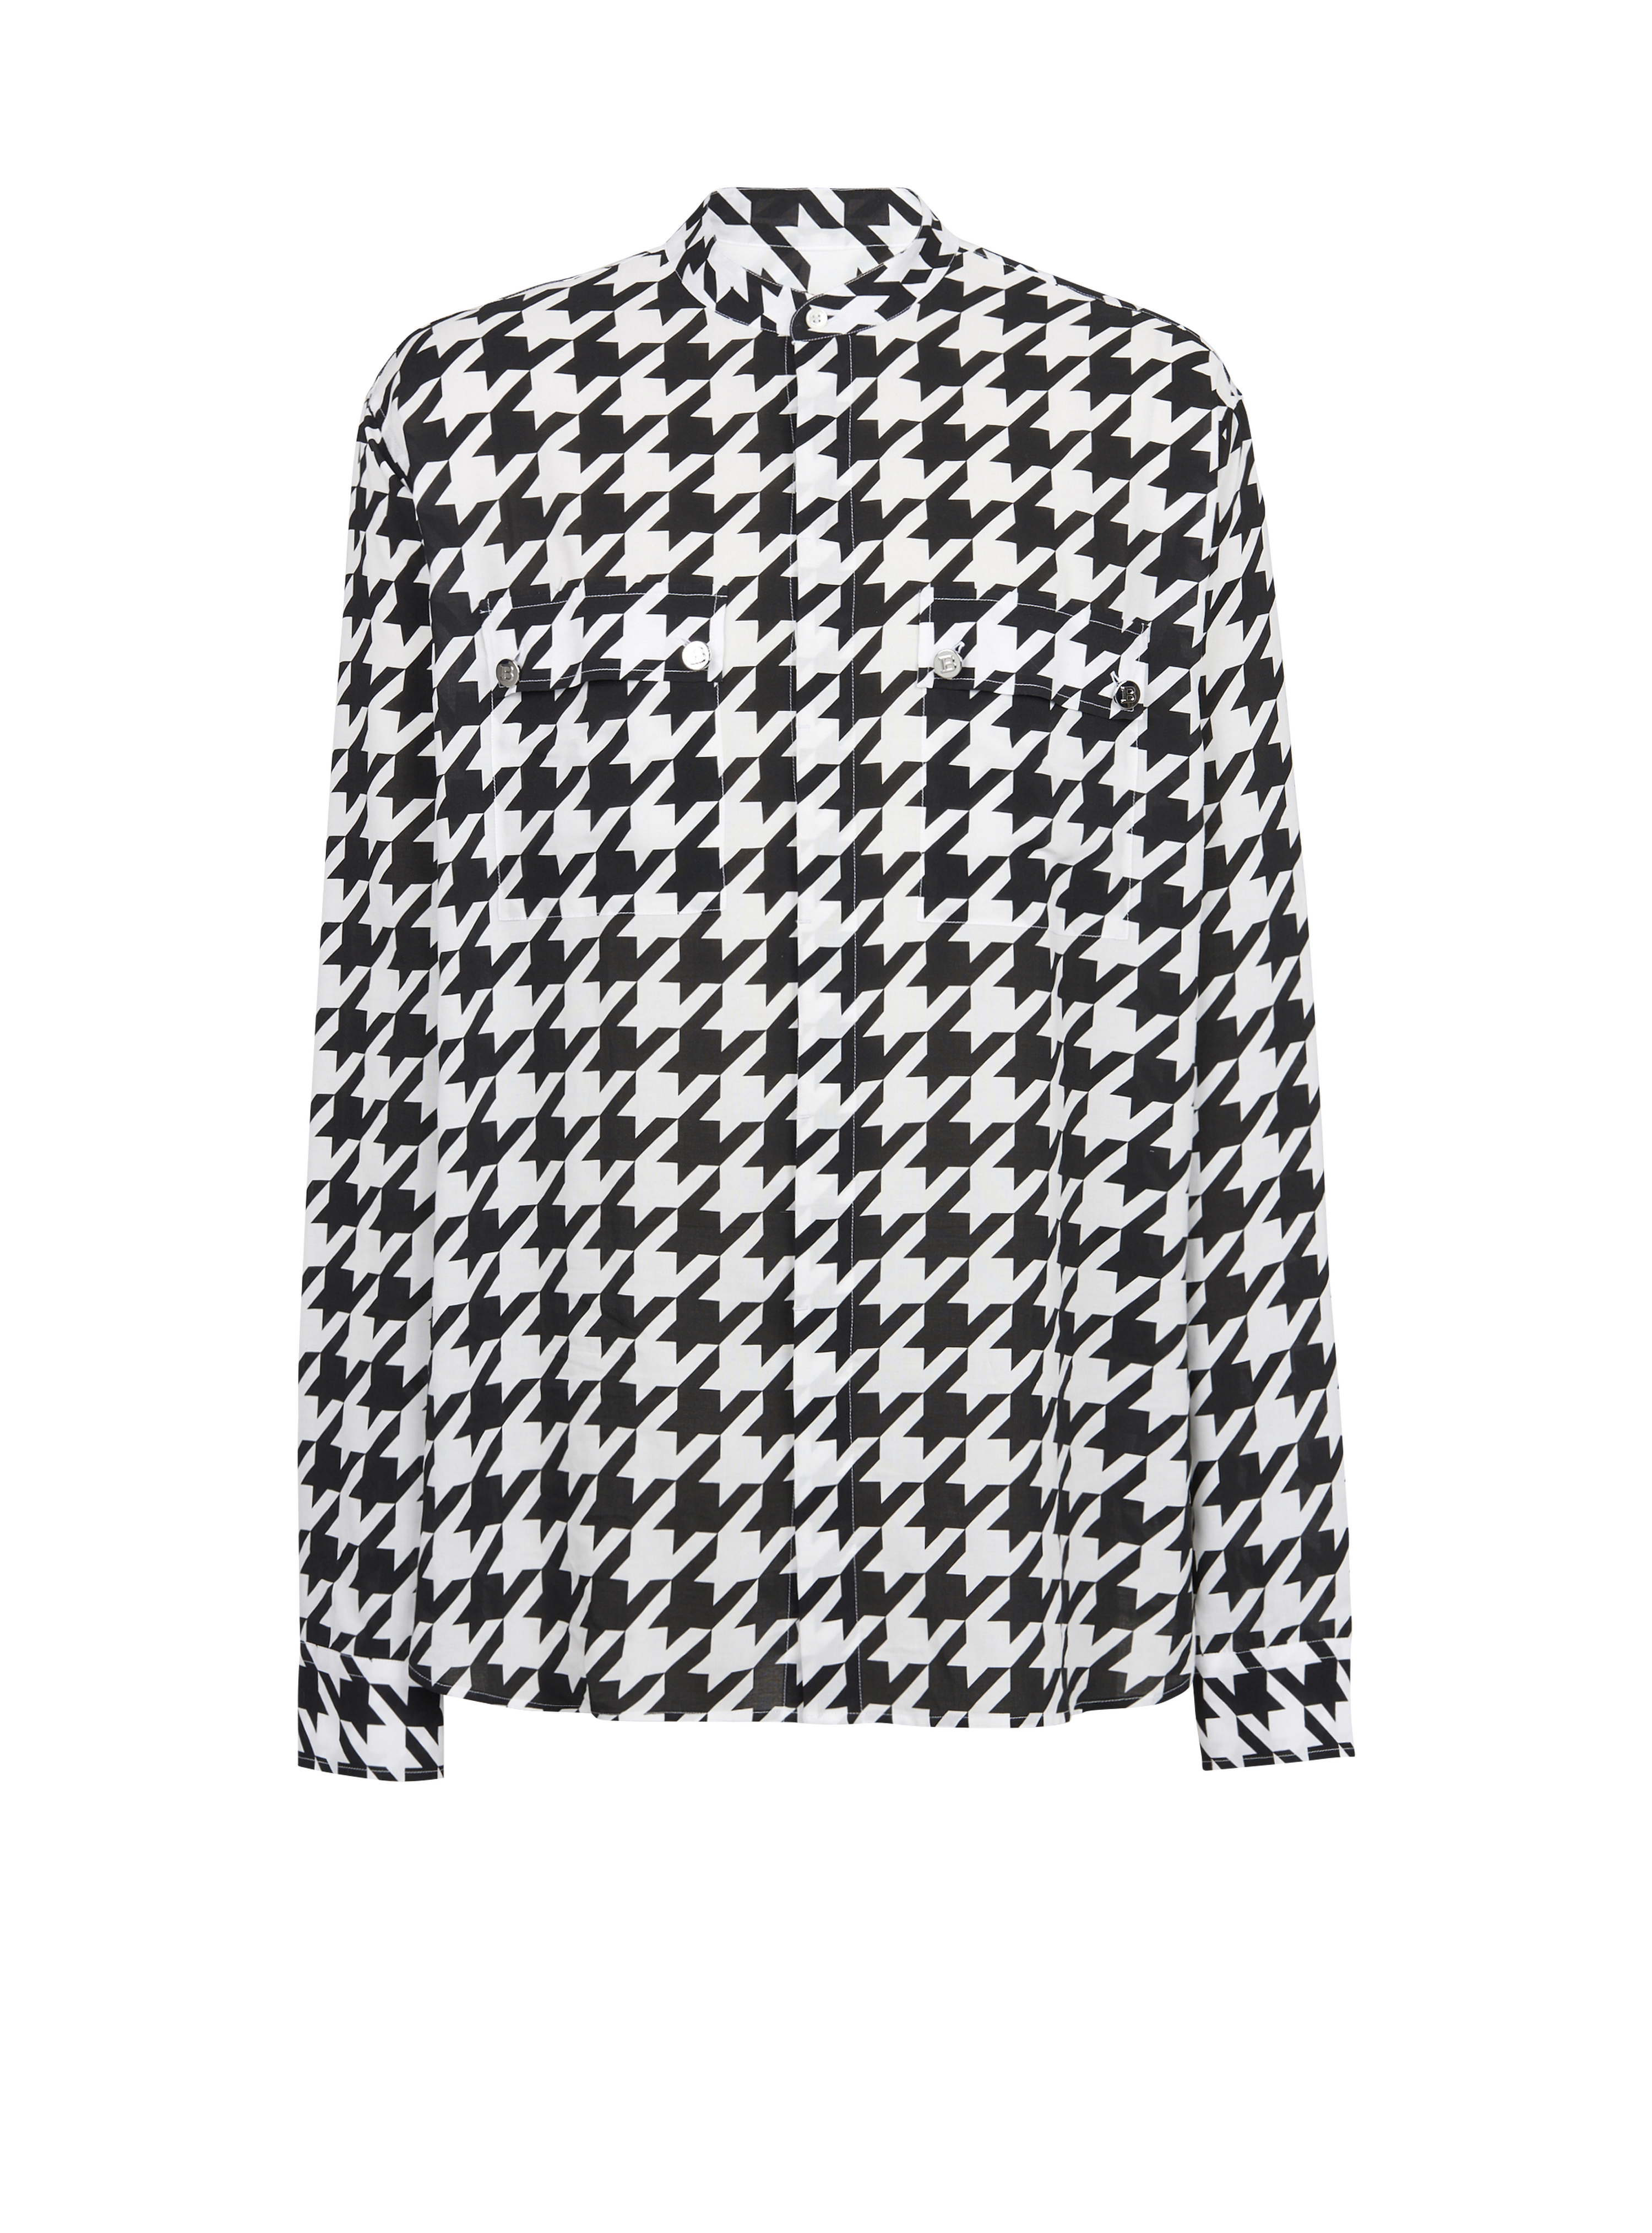 Camicia in cotone con stampa pied-de-poule, nero